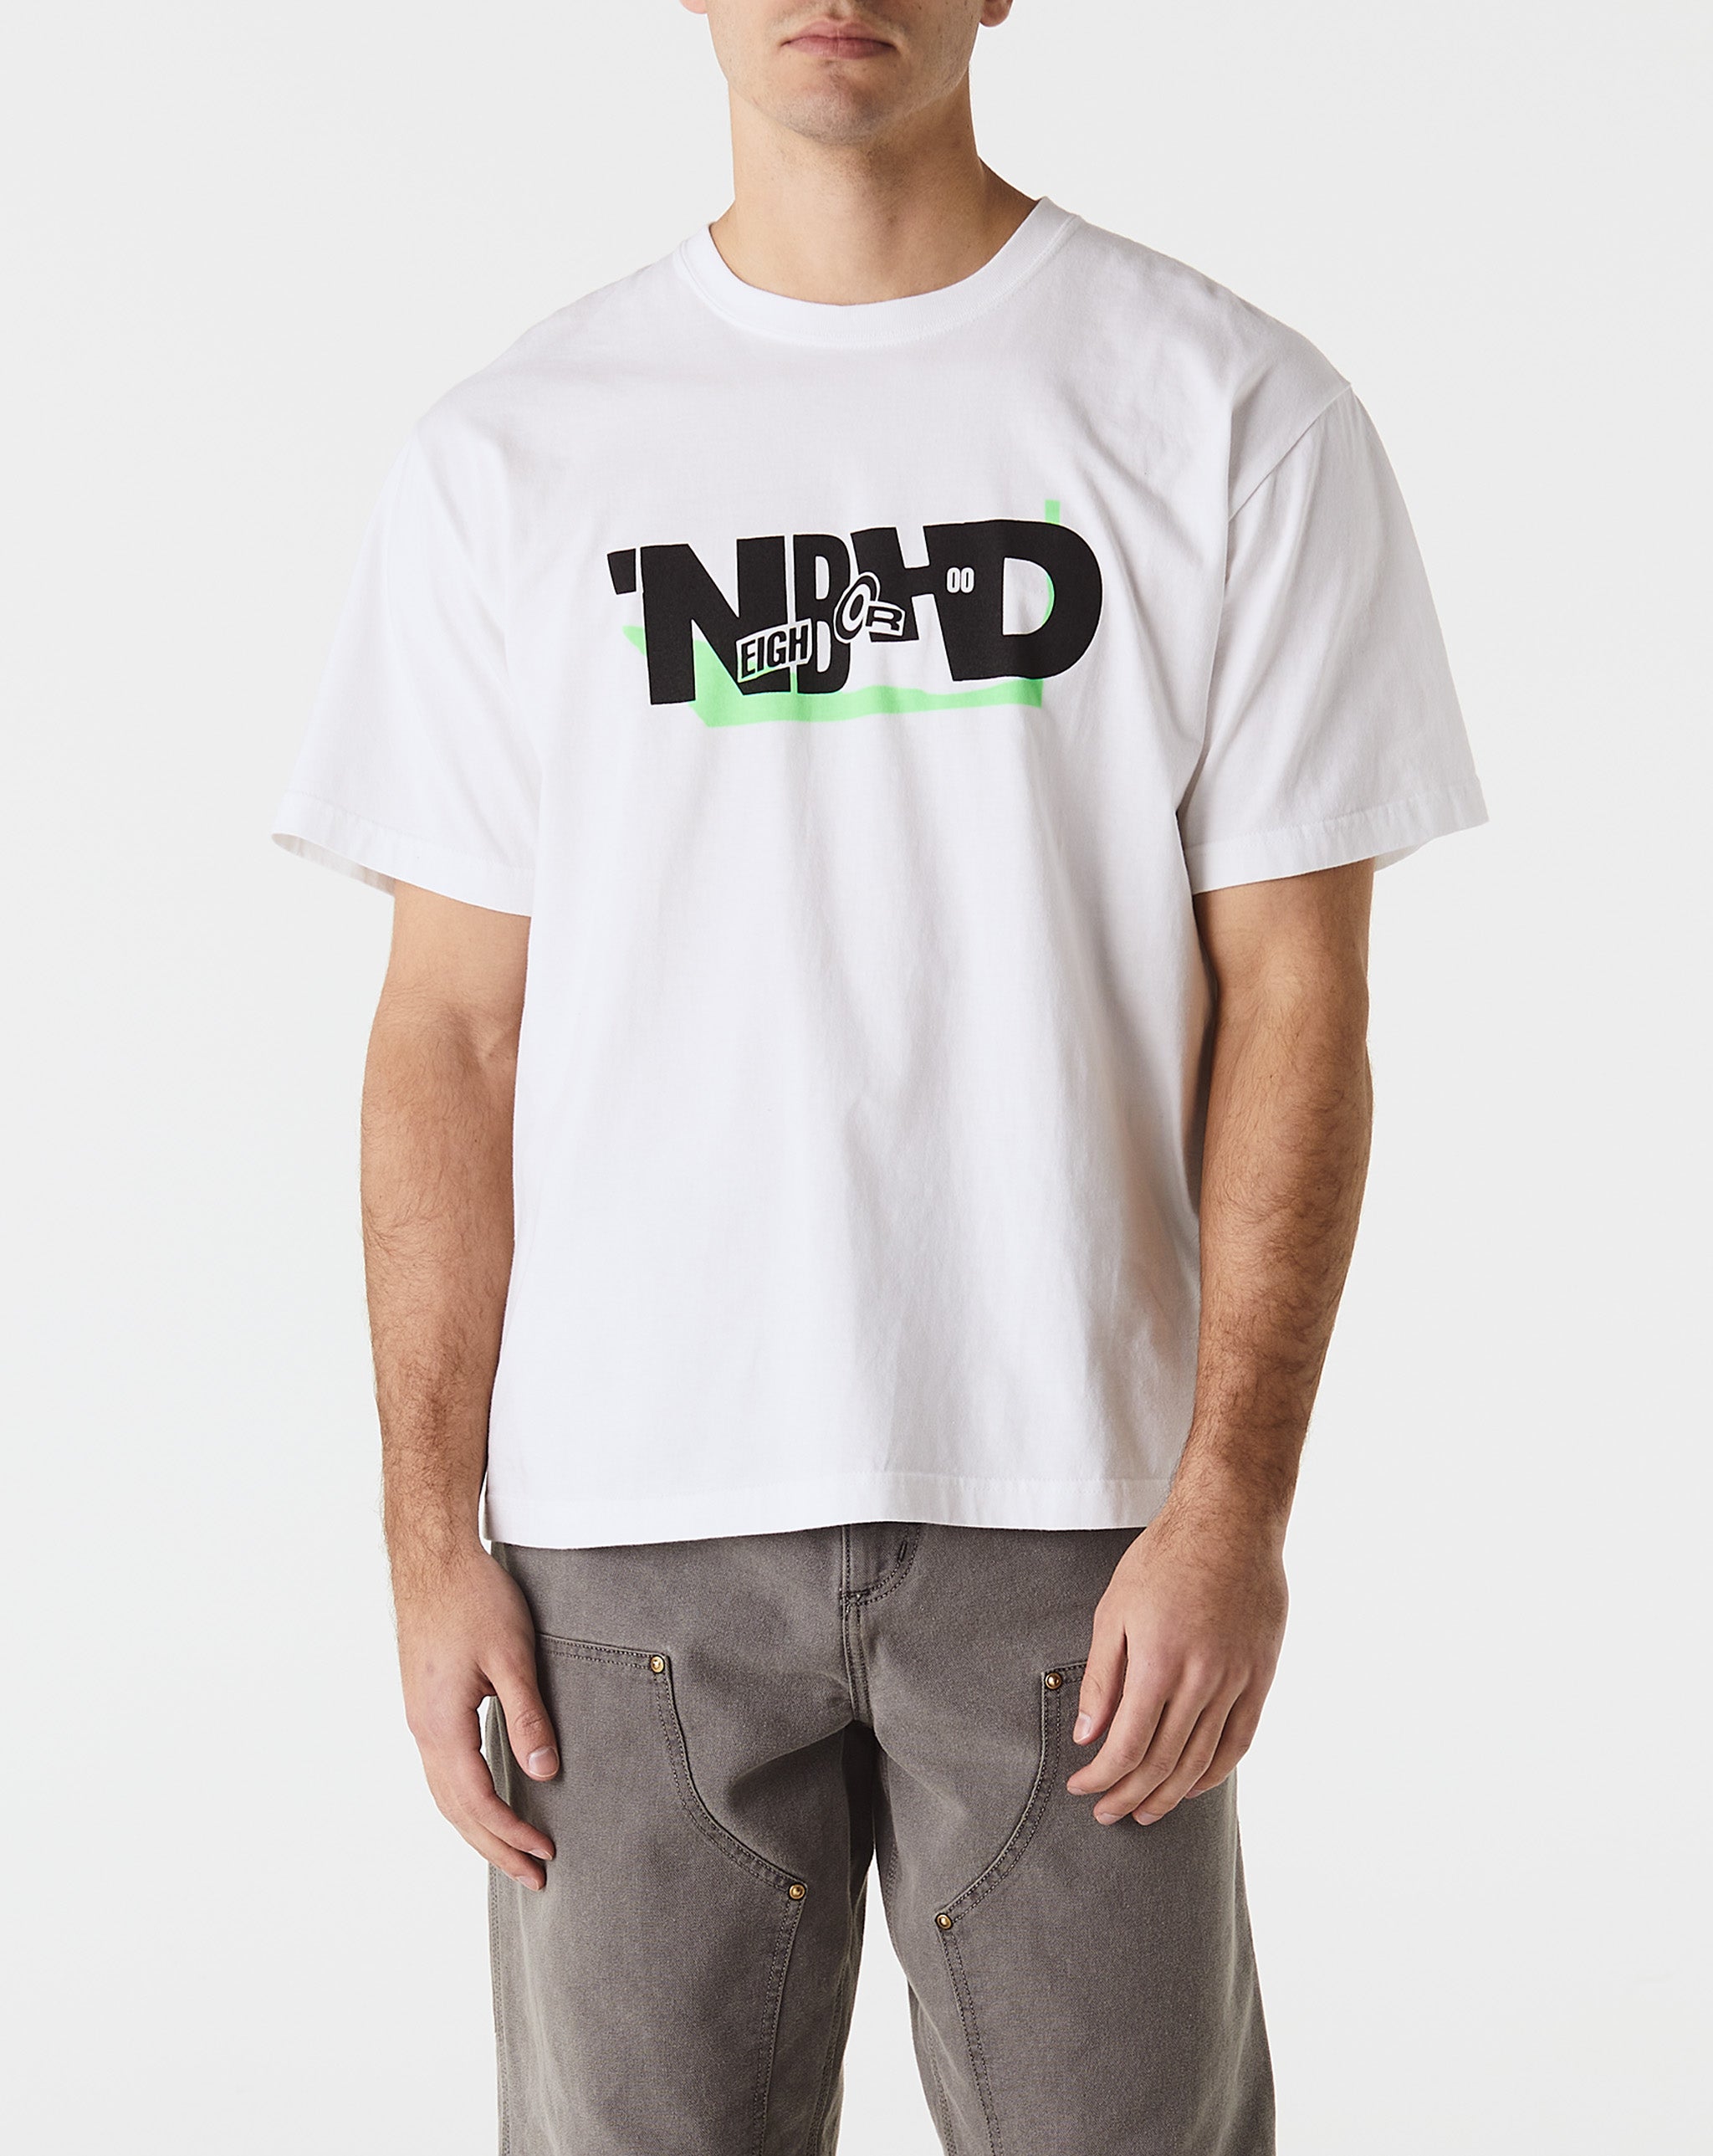 Neighborhood T-Shirt #20  - Cheap Urlfreeze Jordan outlet